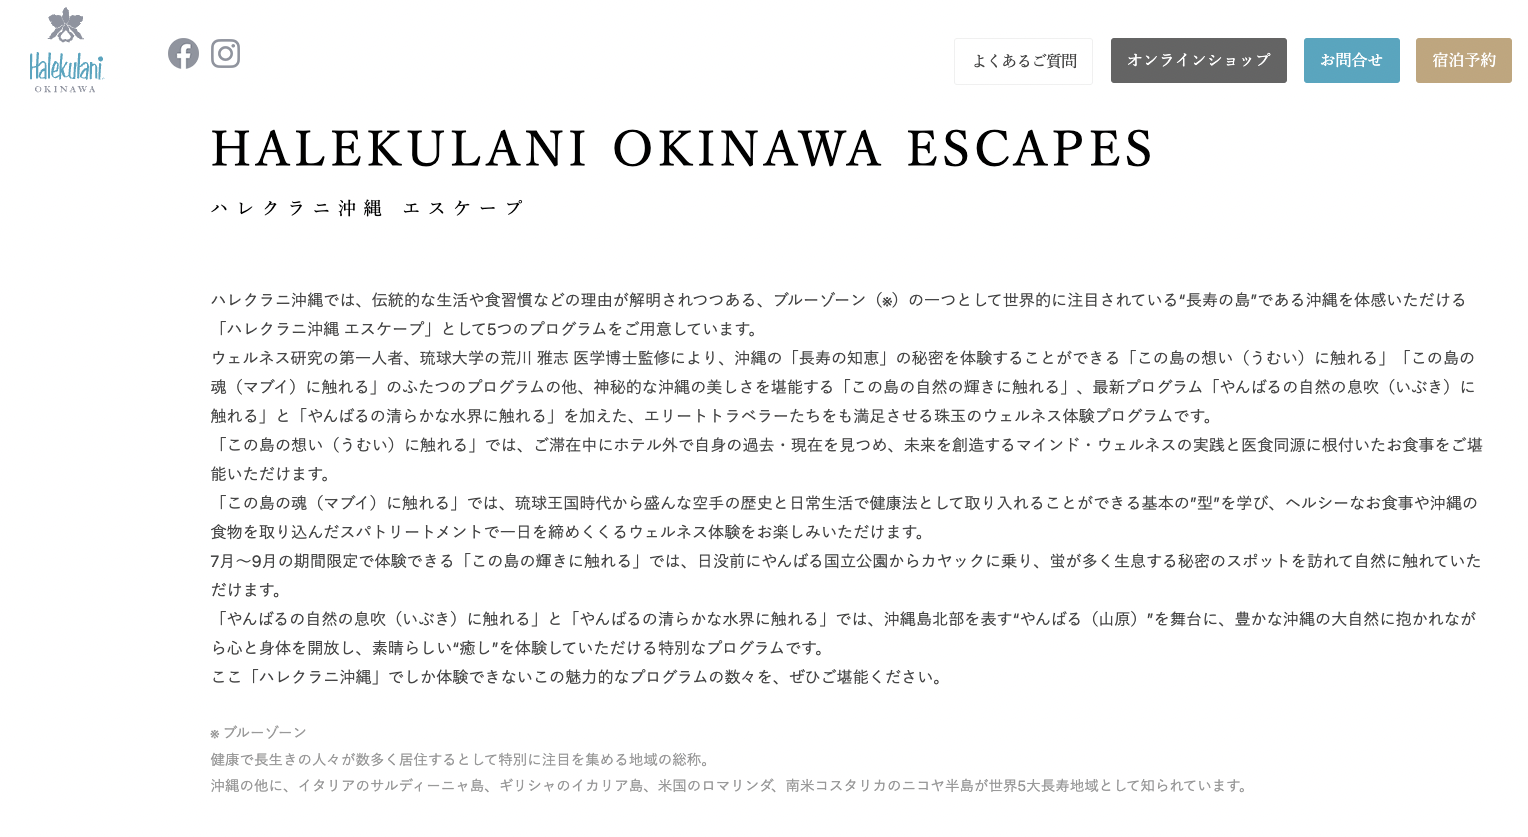 ハレクラニ沖縄エスケープを開発監修・家庭画報に掲載